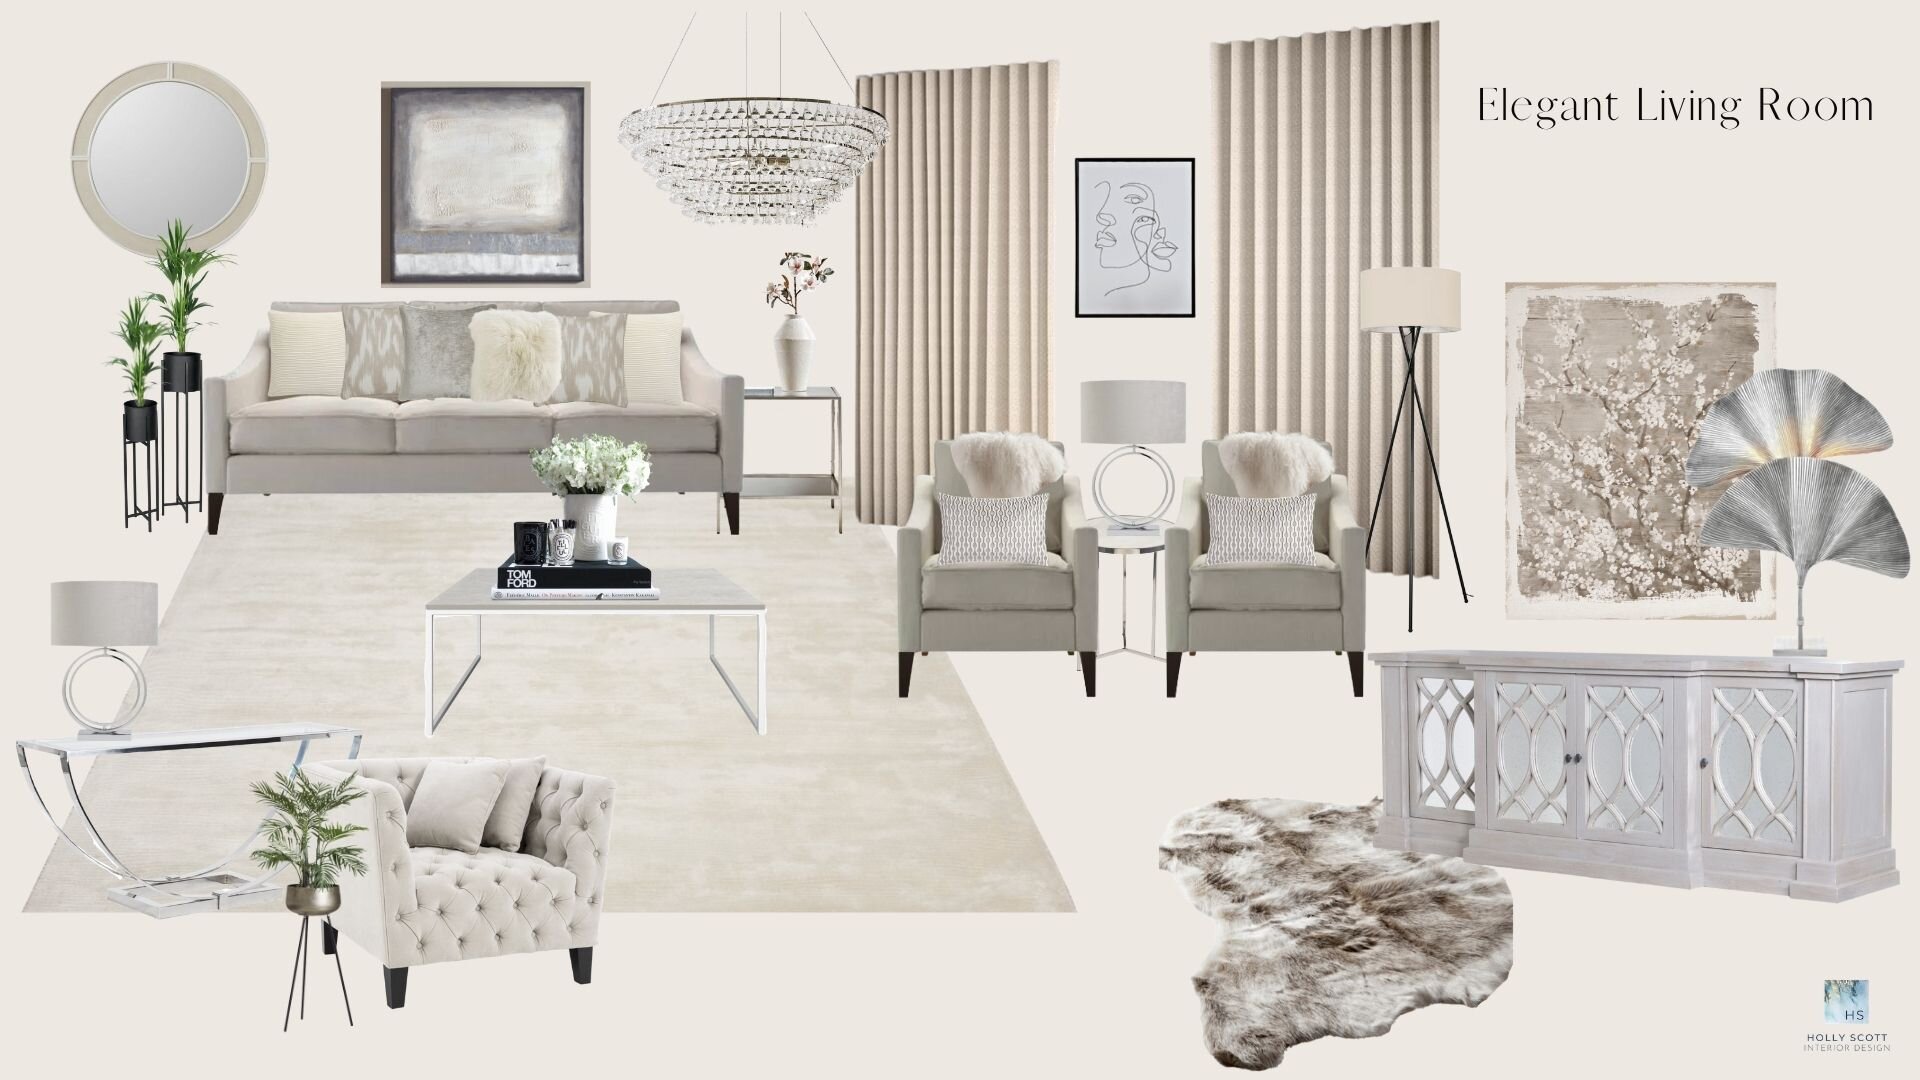 Elegant Living Room Design.jpg